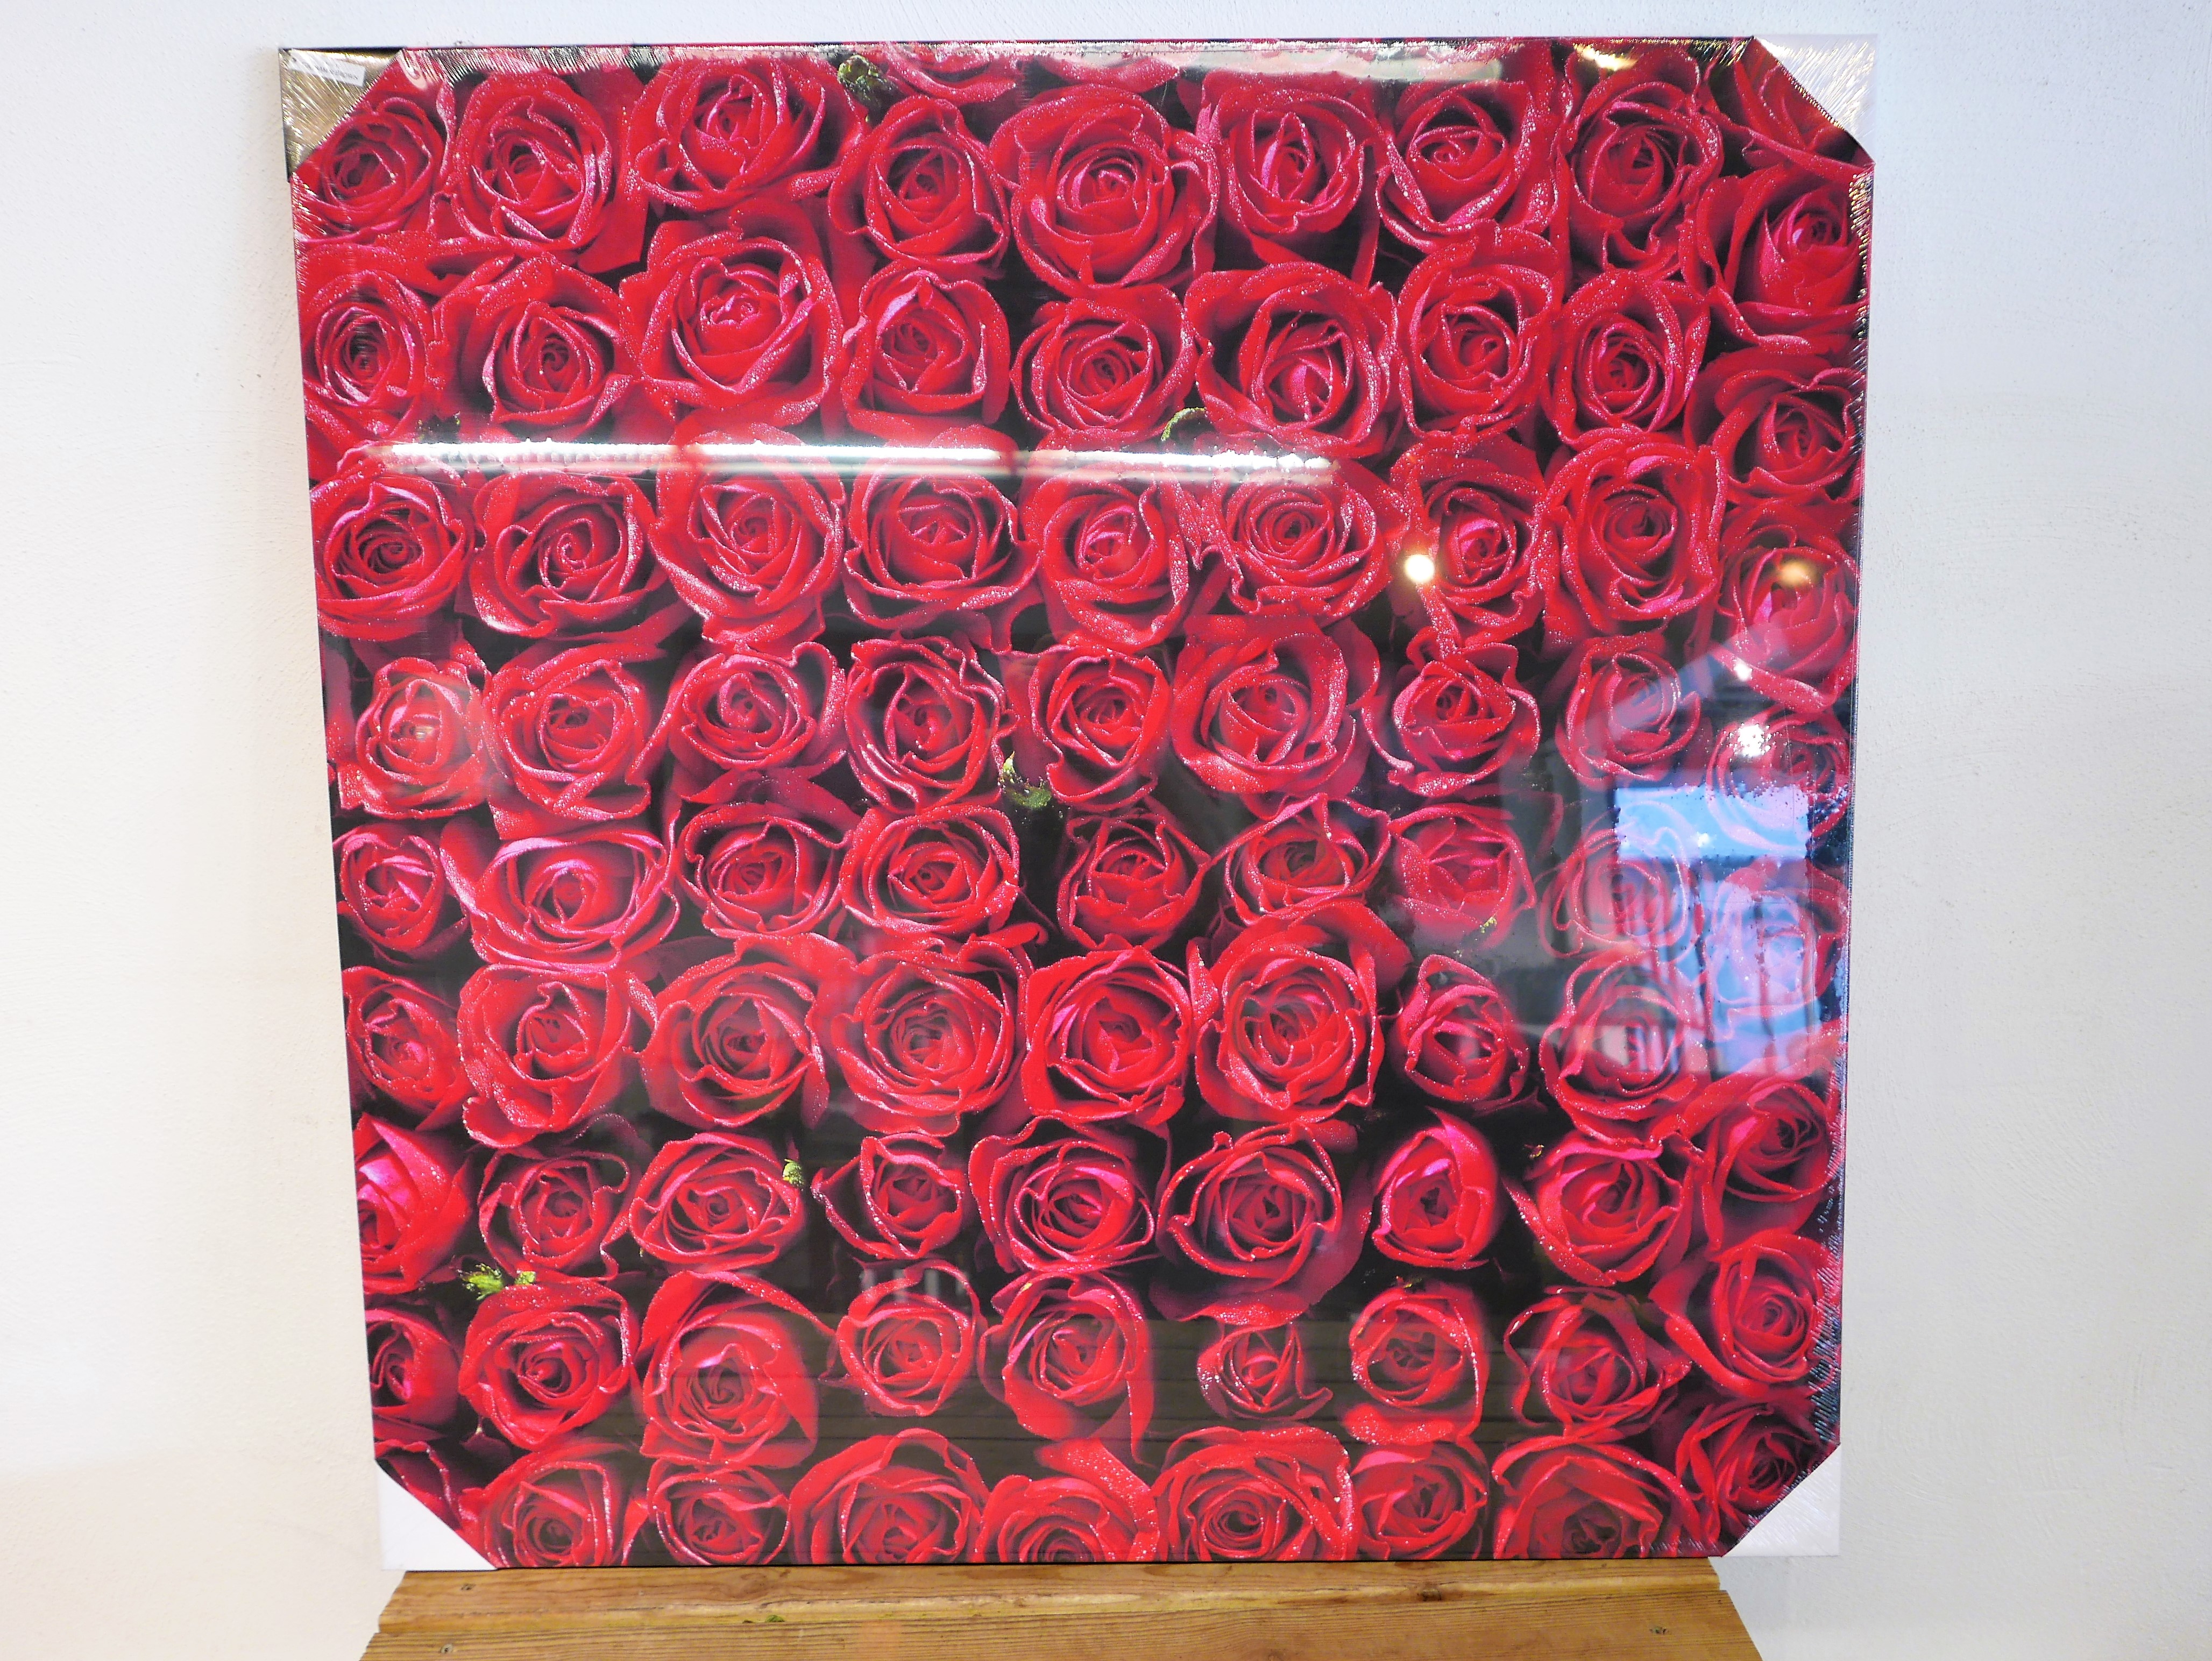 Wanddecoratie rozen op canvas 100x100 cm   